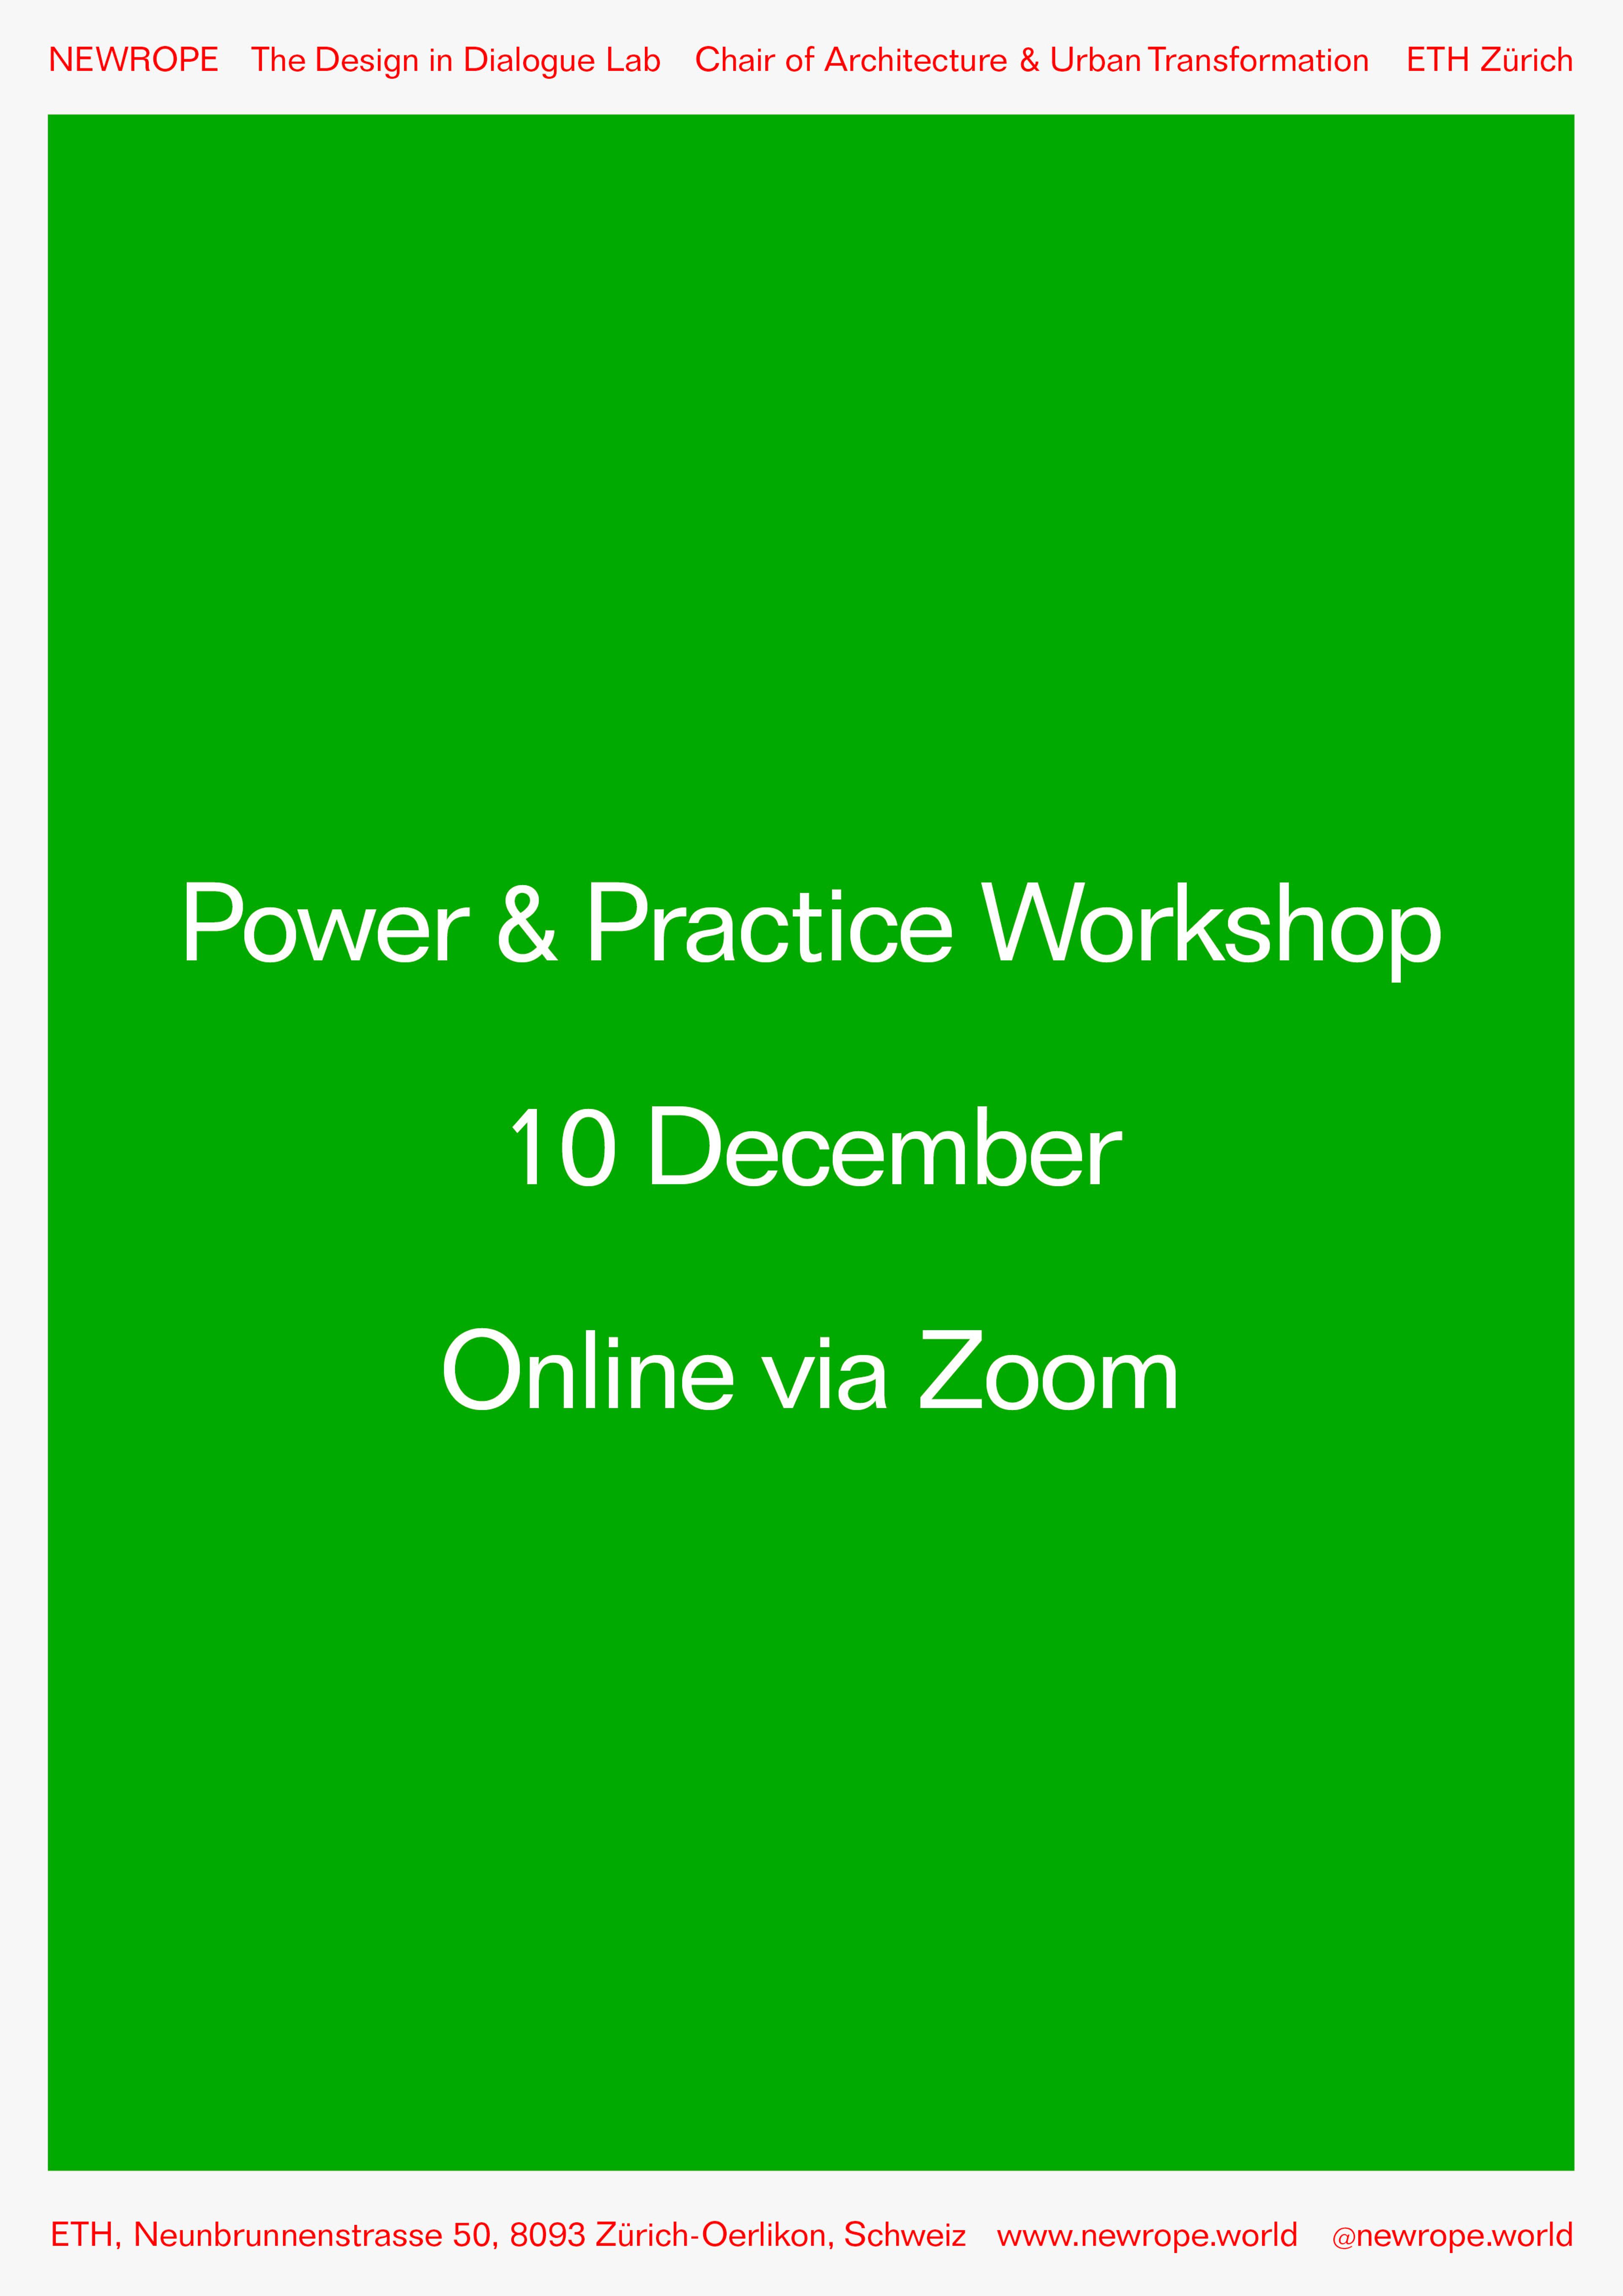 Announcement: Power & Practice Workshop